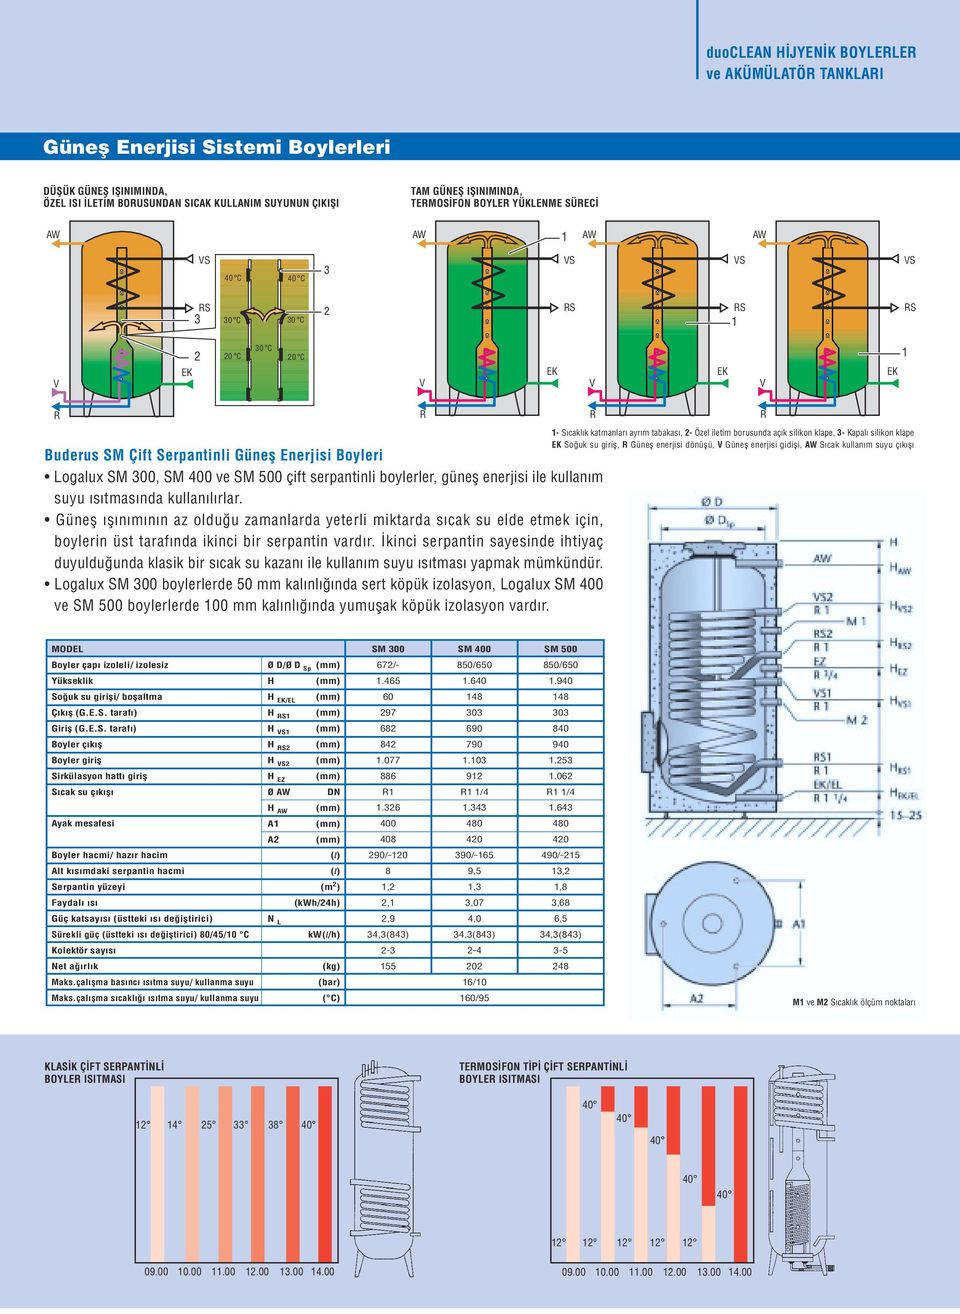 Logalux SM 300, SM ve SM çift serpantinli boylerler, günefl enerjisi ile kullan m suyu s tmas nda kullan l rlar.